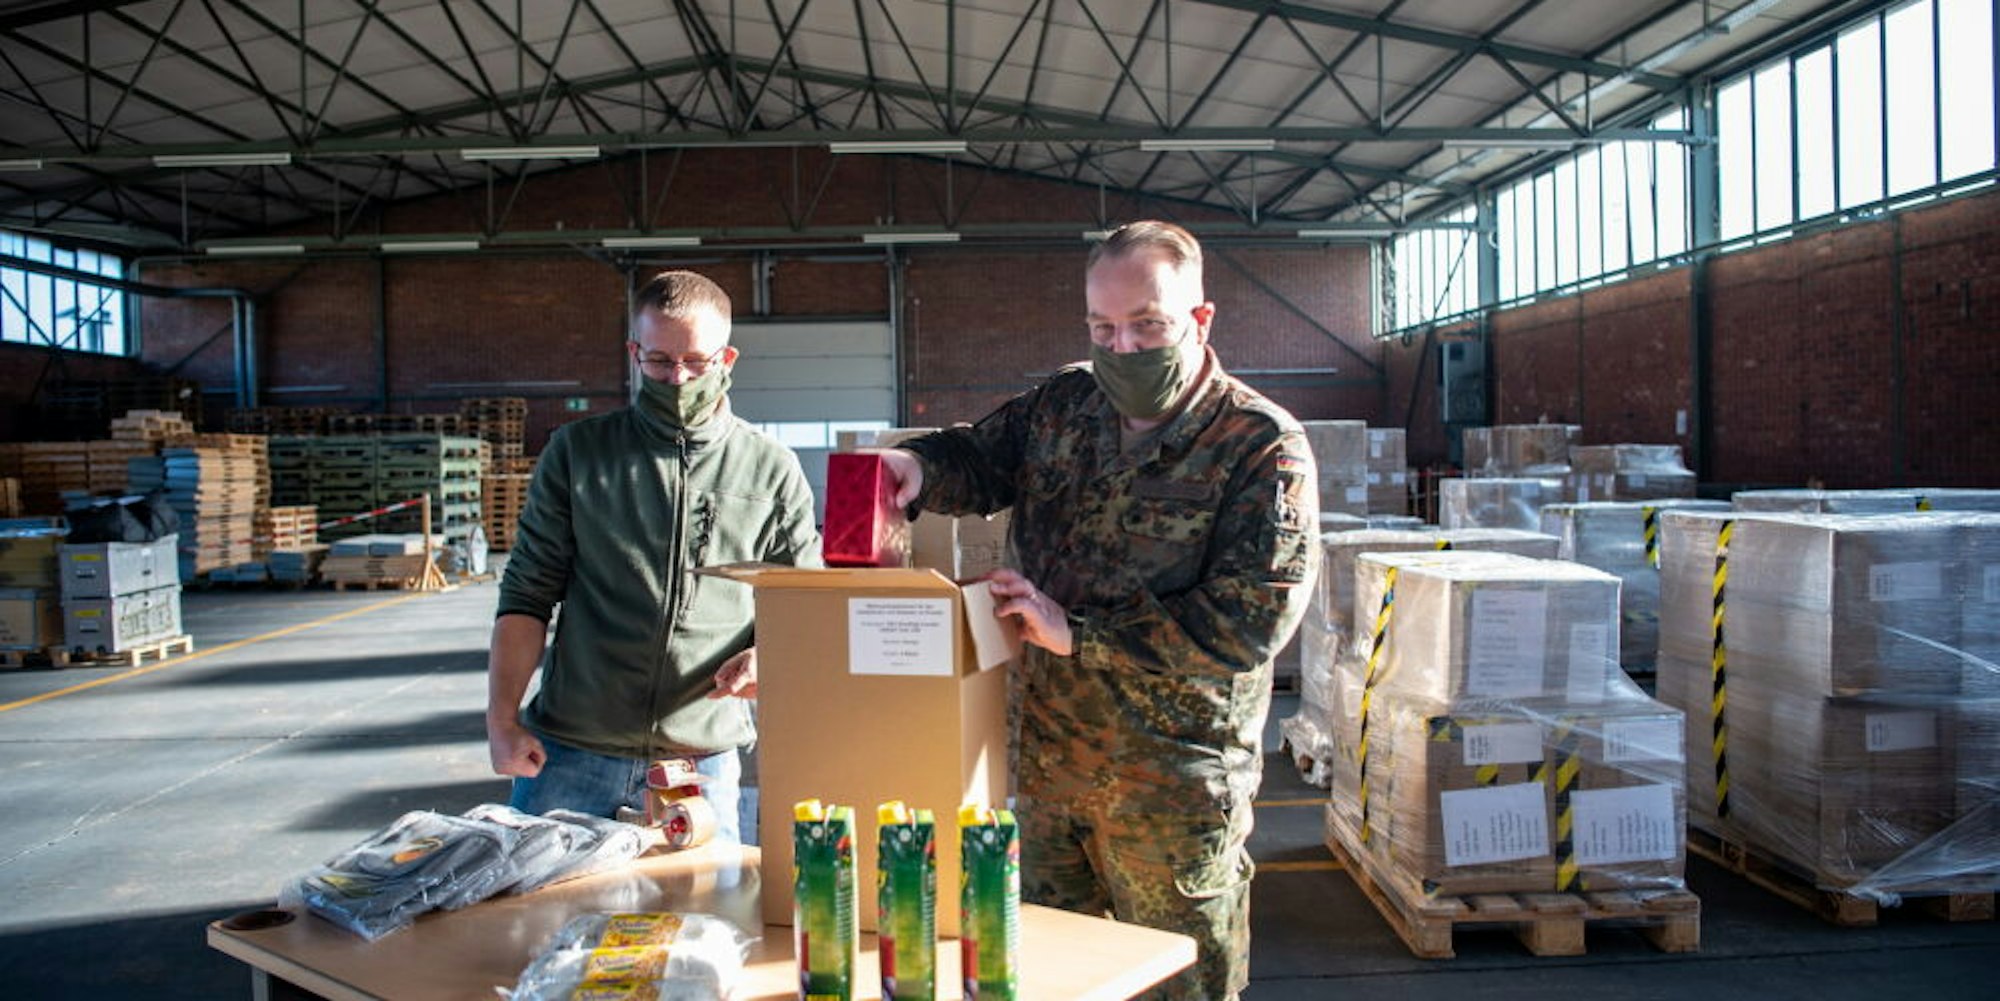 Stollen, Punsch und Geschenke verpackten Marco Groß (links) und Oberstleutnant Dirk Hagenbach im Materiallager in Mechernich. 4821 Päckchen wurden hier insgesamt gepackt, eins für jeden Soldaten im Auslandseinsatz.